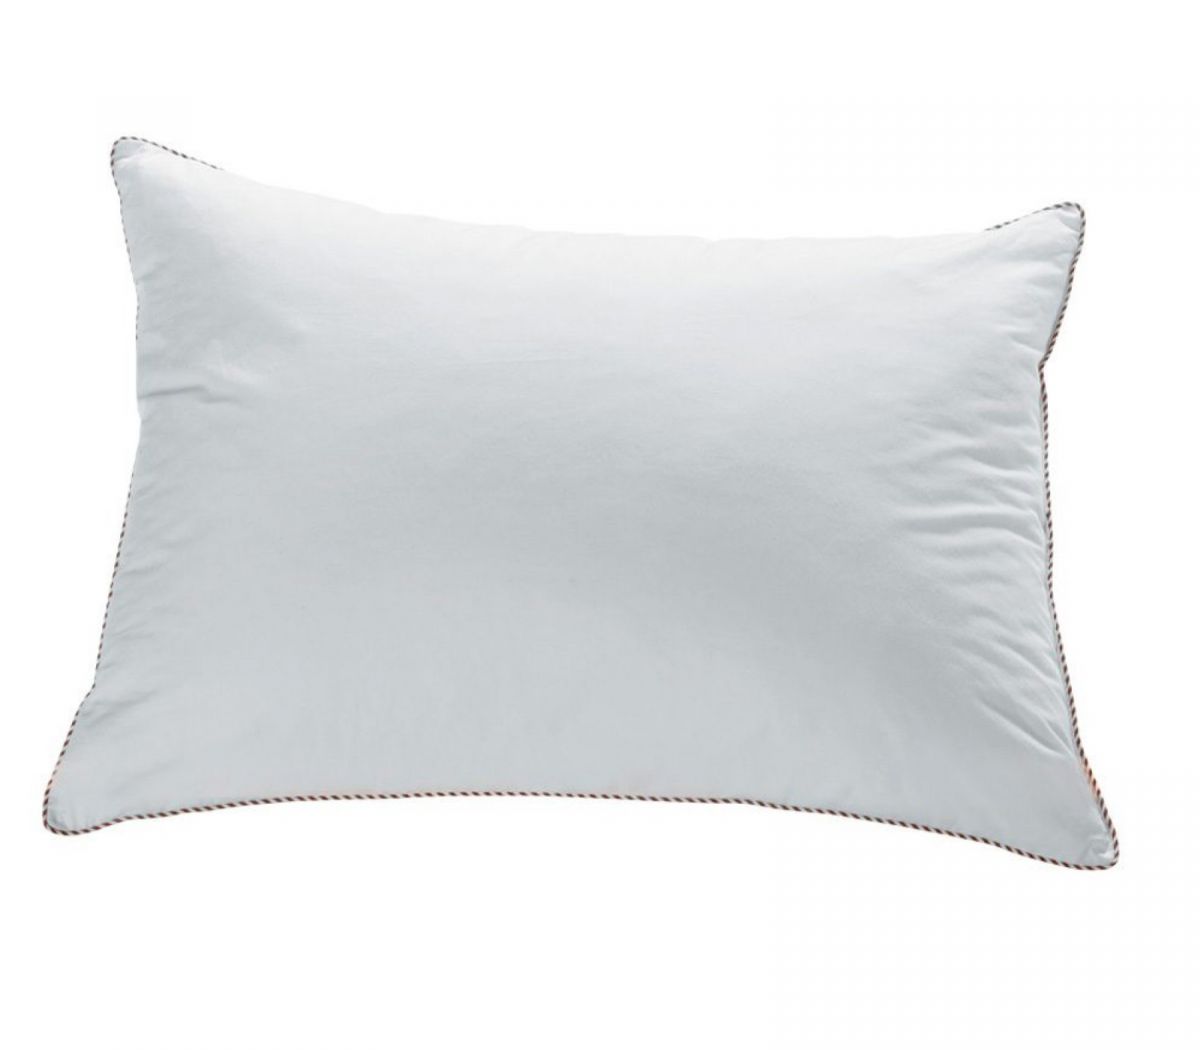 Μαξιλάρι Ύπνου Hollowfiber Ανατομικό Hollow Pillow kentia